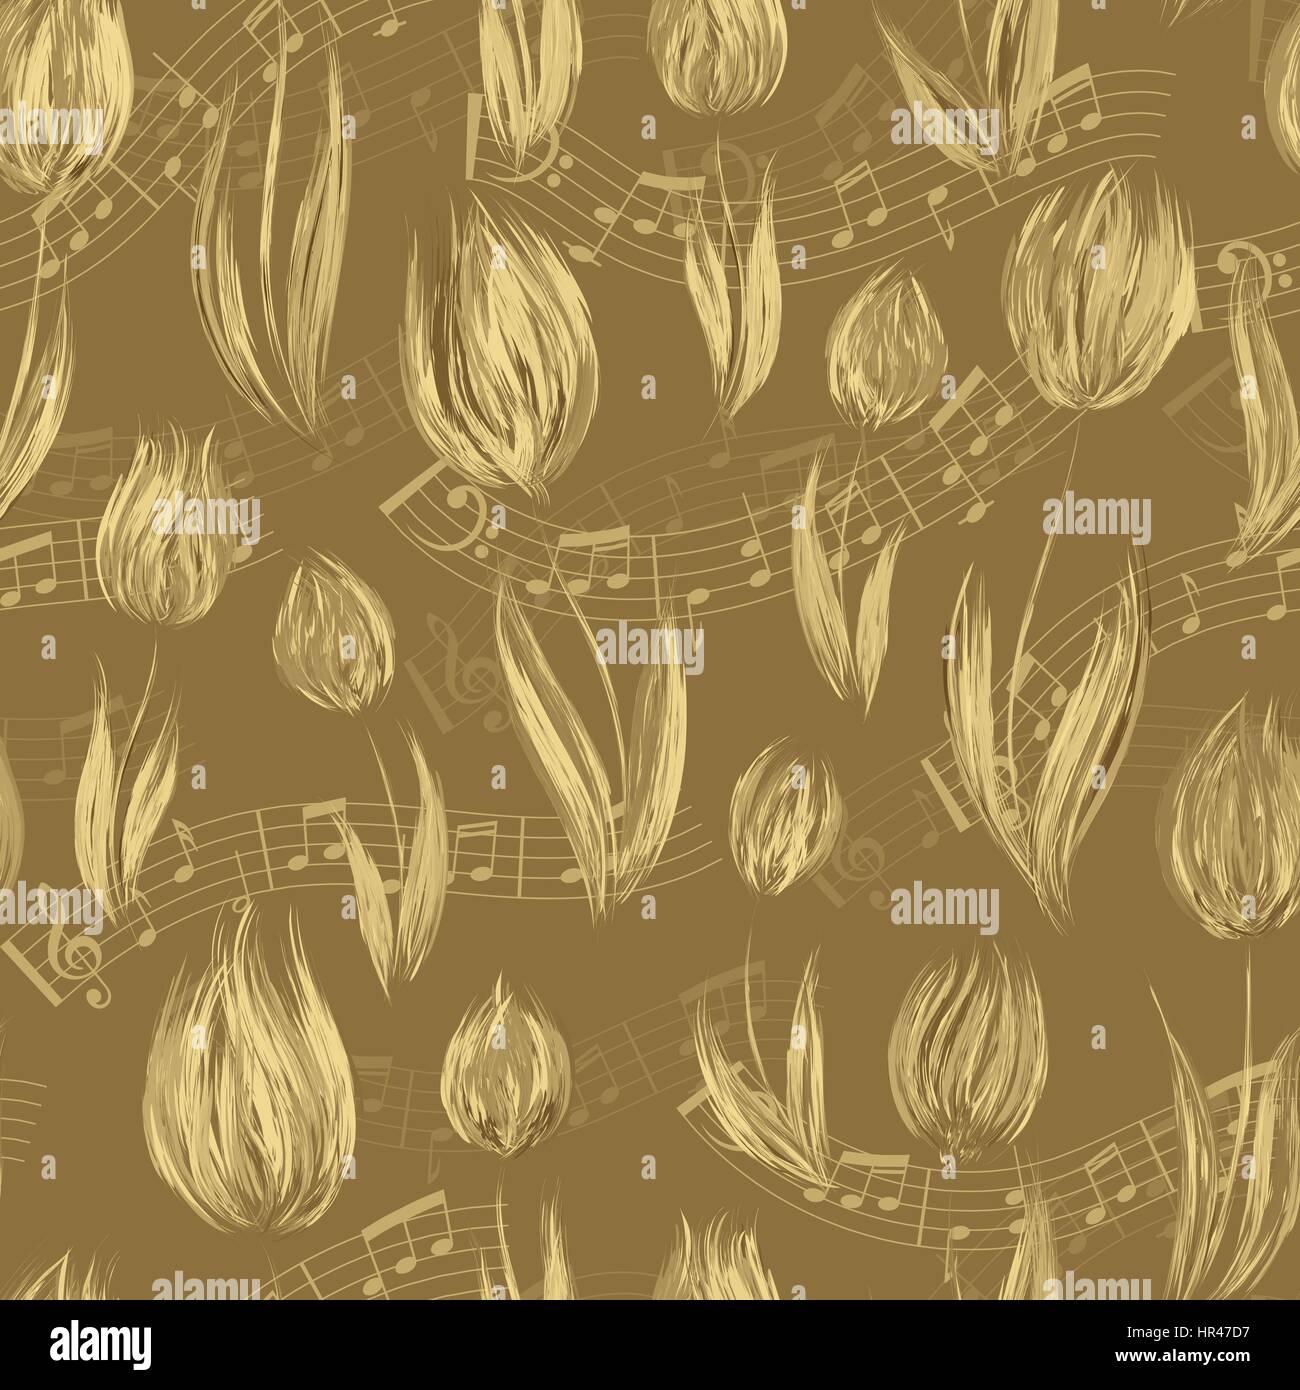 Motif transparent brillant à l'huile peints en beige fleurs tulipes couleurs notes de fin. Motif floral pour les invitations de mariage, cartes de voeux, scrapbooking, p Illustration de Vecteur